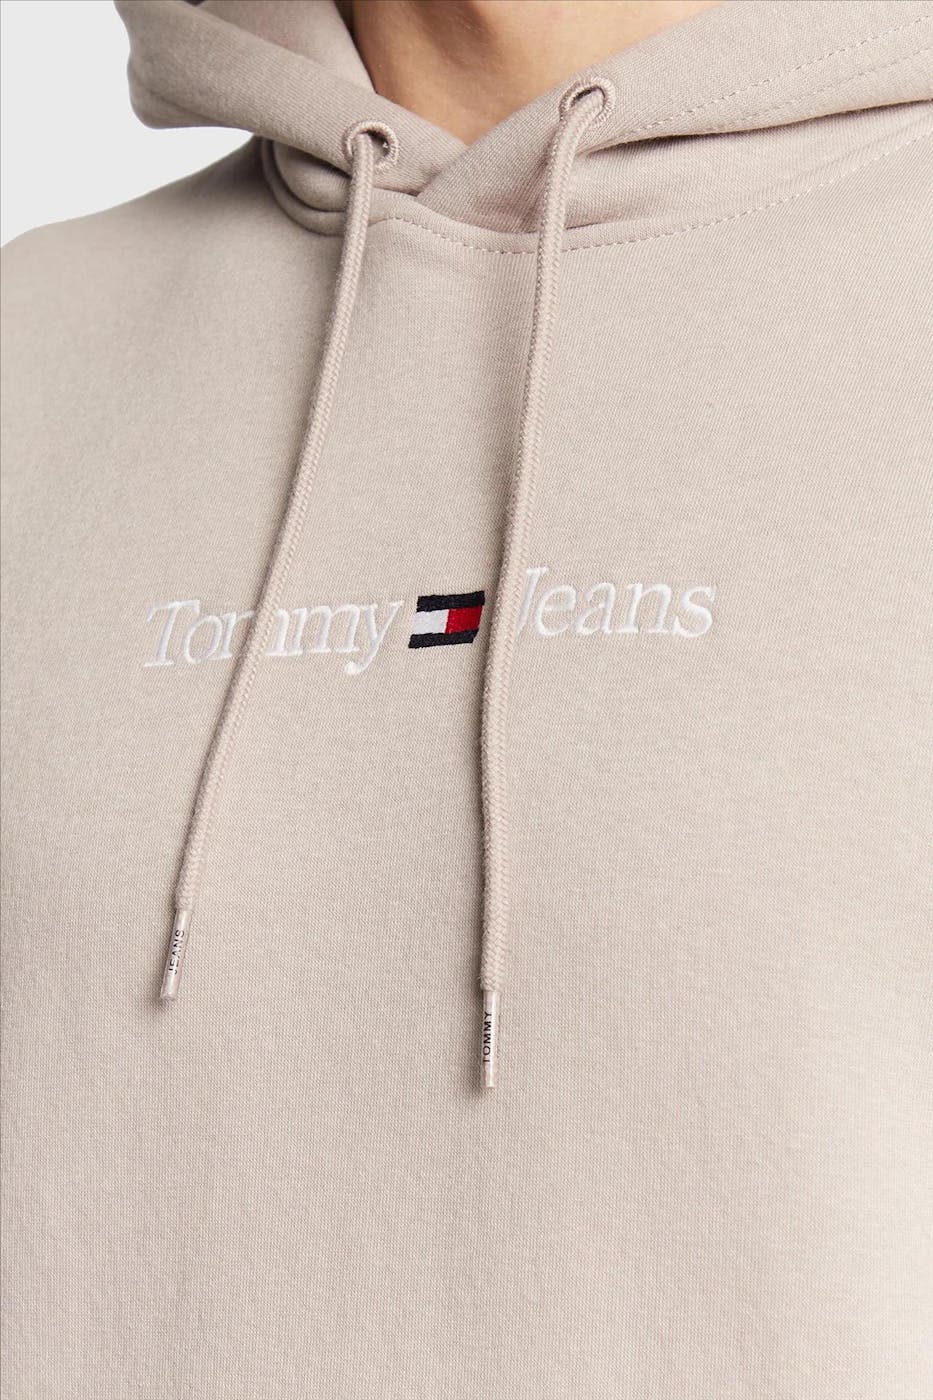 Tommy Jeans - Beige Linear Logo hoodie